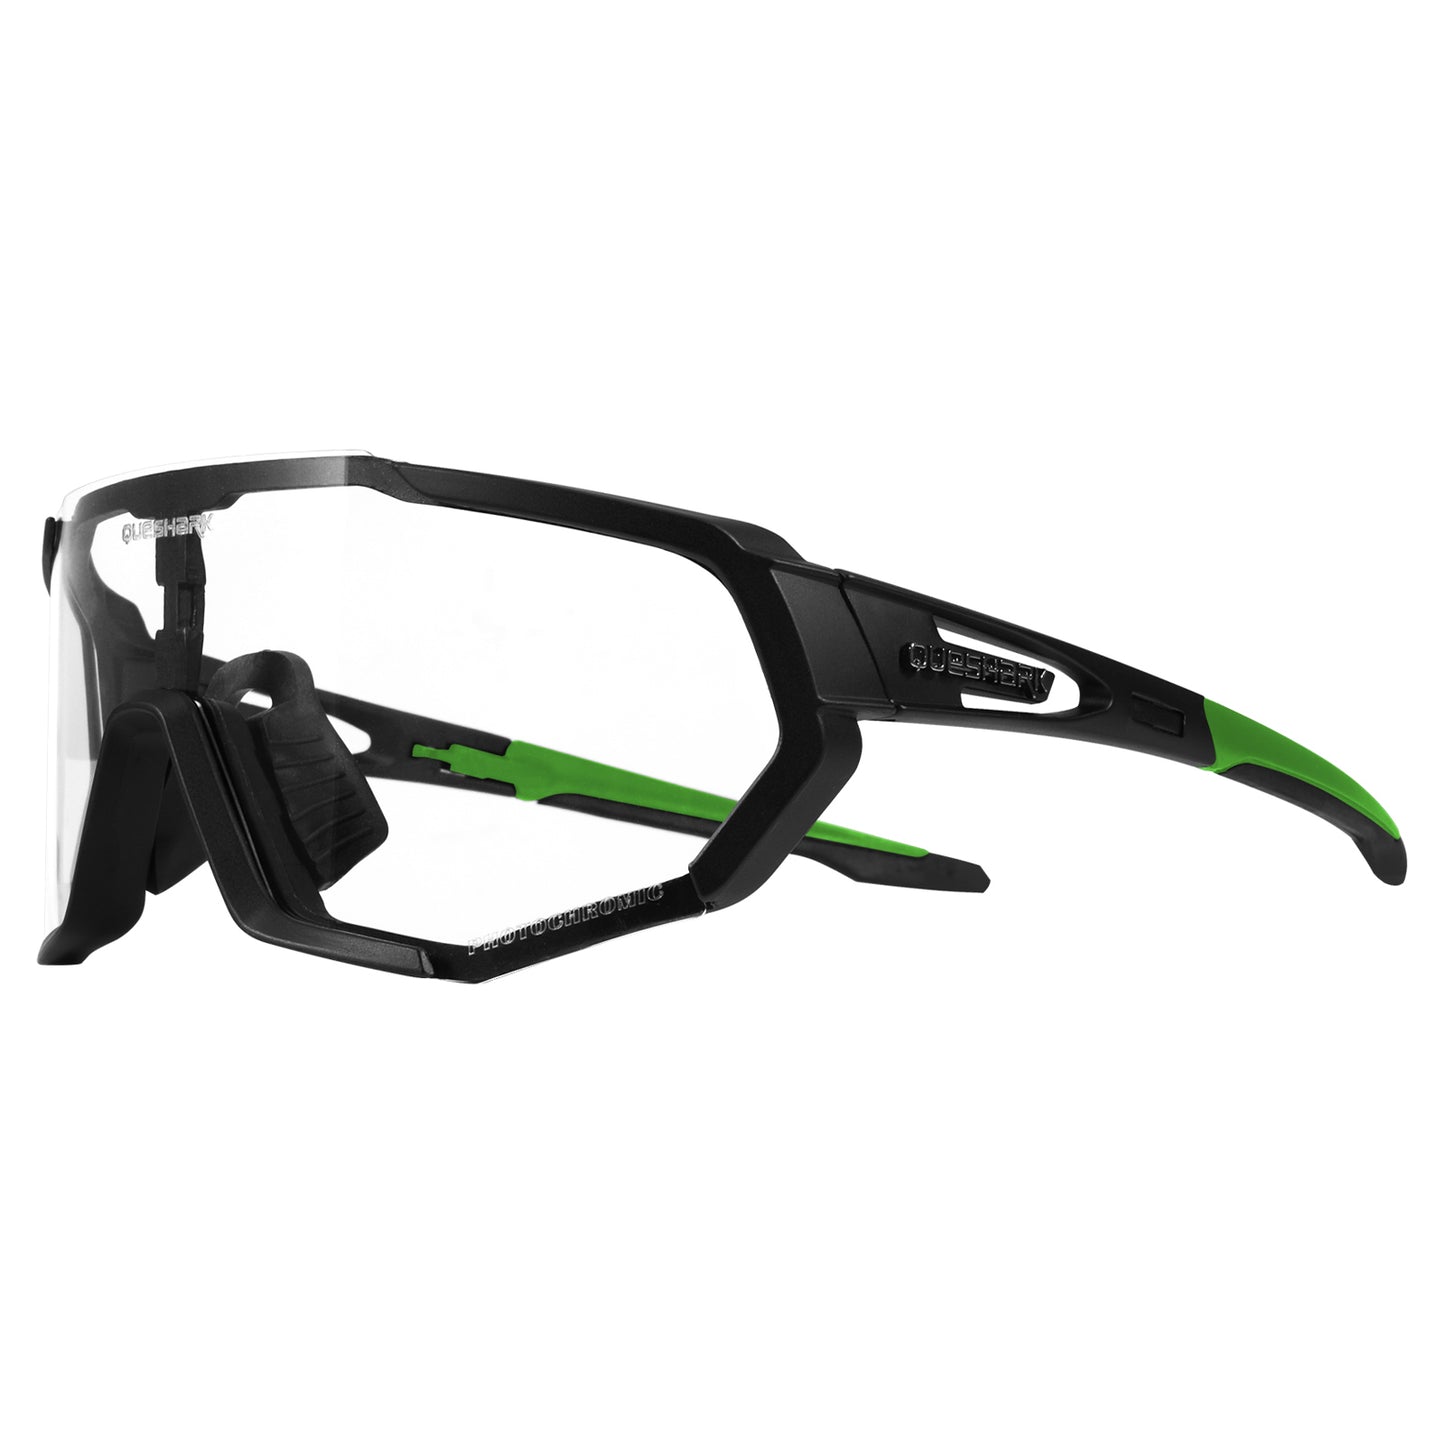 QE48 BS Queshark Photochrome Sonnenbrille für Männer Frauen Sicherheit Fahrradbrille UV-Schutz Outdoor Sport MTB Schwarz Grün